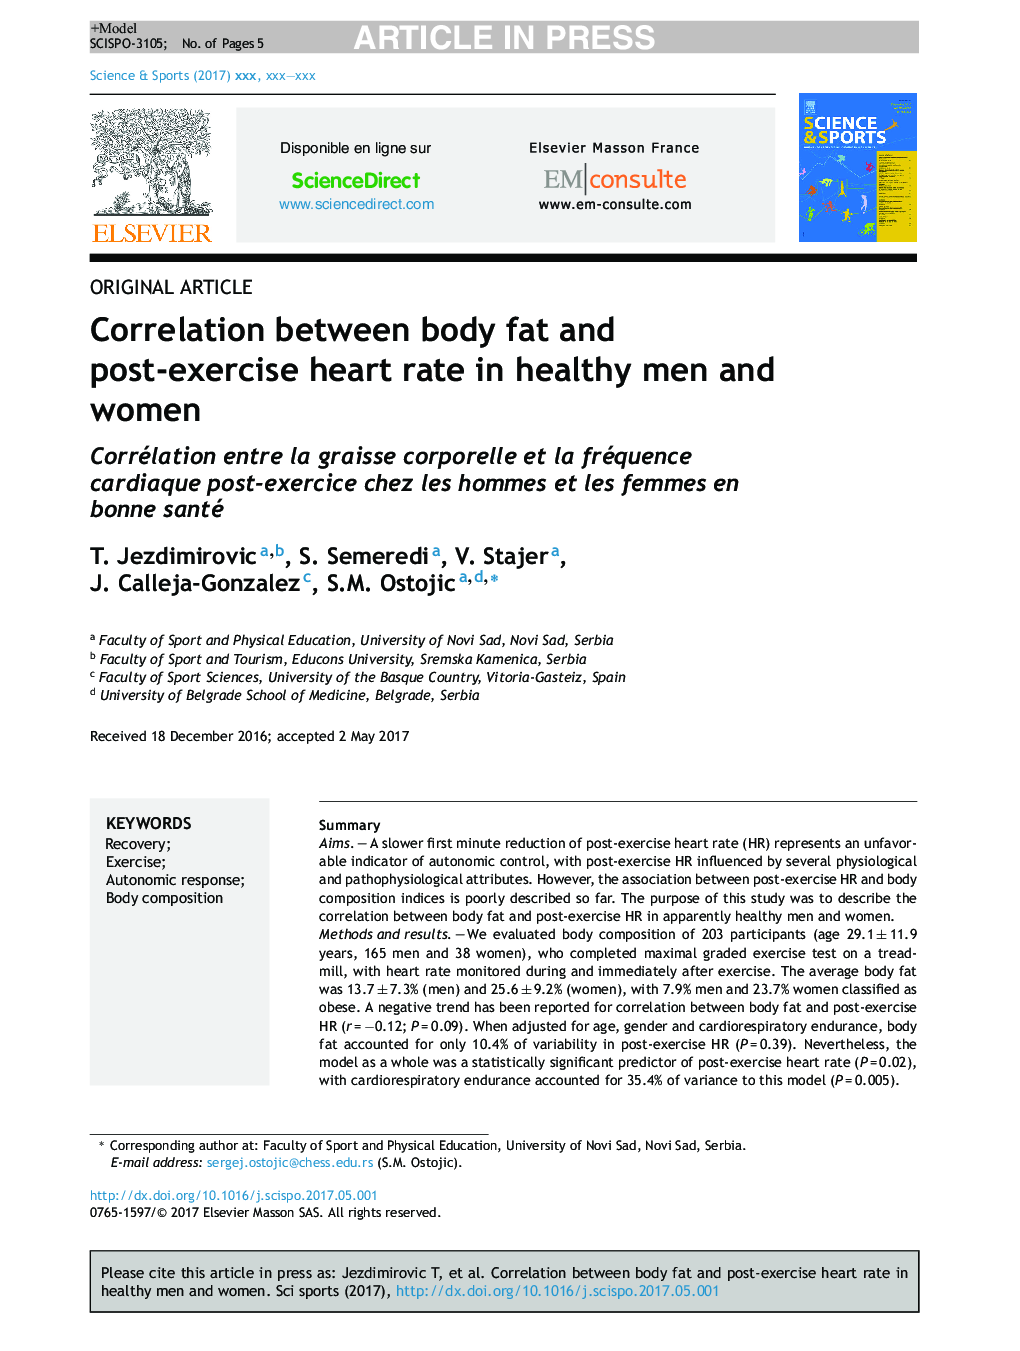 همبستگی بین چربی بدن و ضربان قلب پس از ورزش در مردان و زنان سالم 